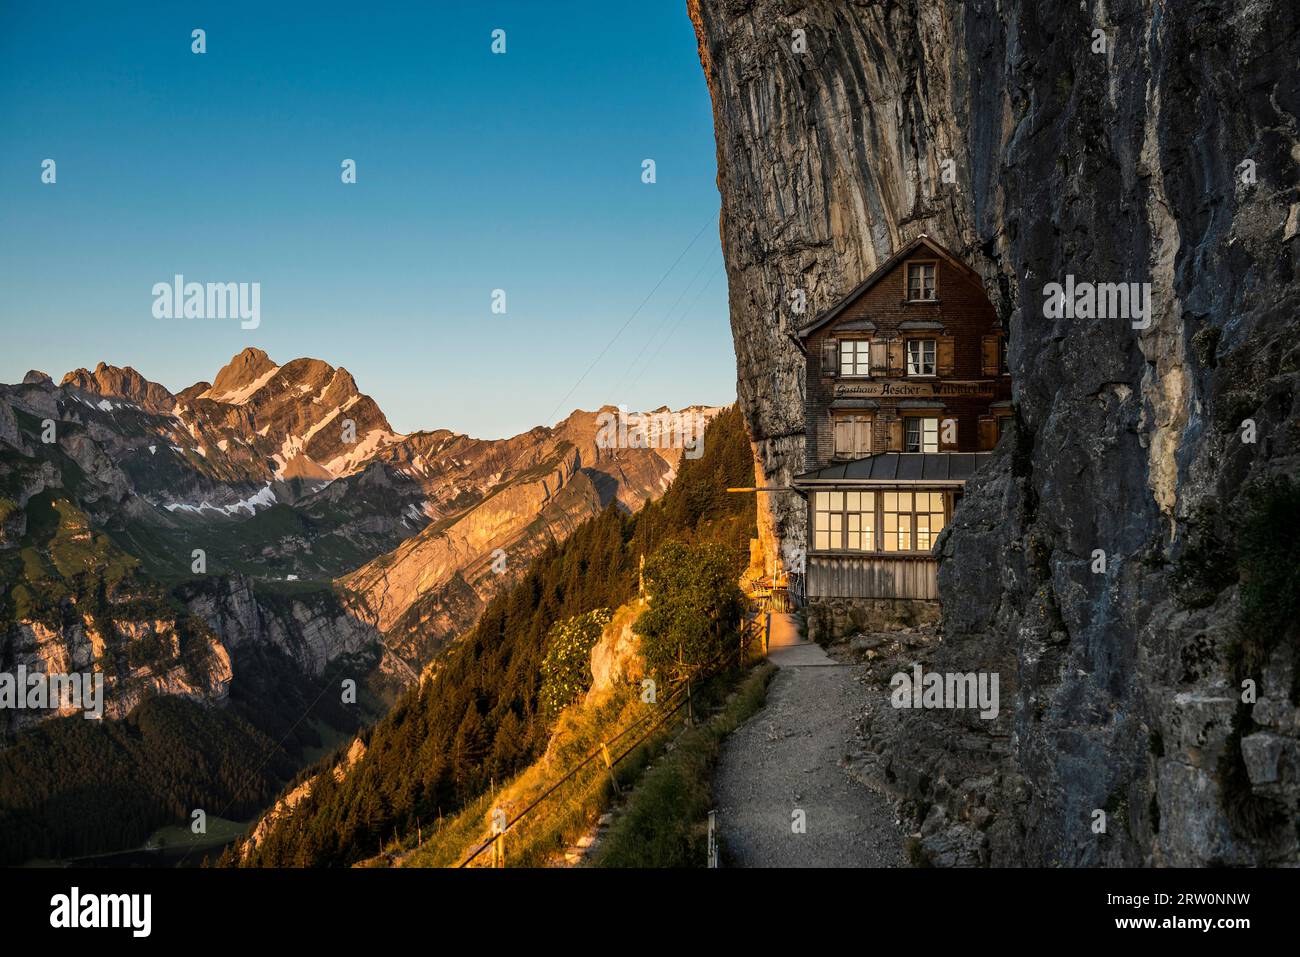 Aescher-Wildkirchli mountain inn, sunrise, below Ebenalp, Weissbad, Alpstein, Canton Appenzell Innerrhoden, Switzerland Stock Photo